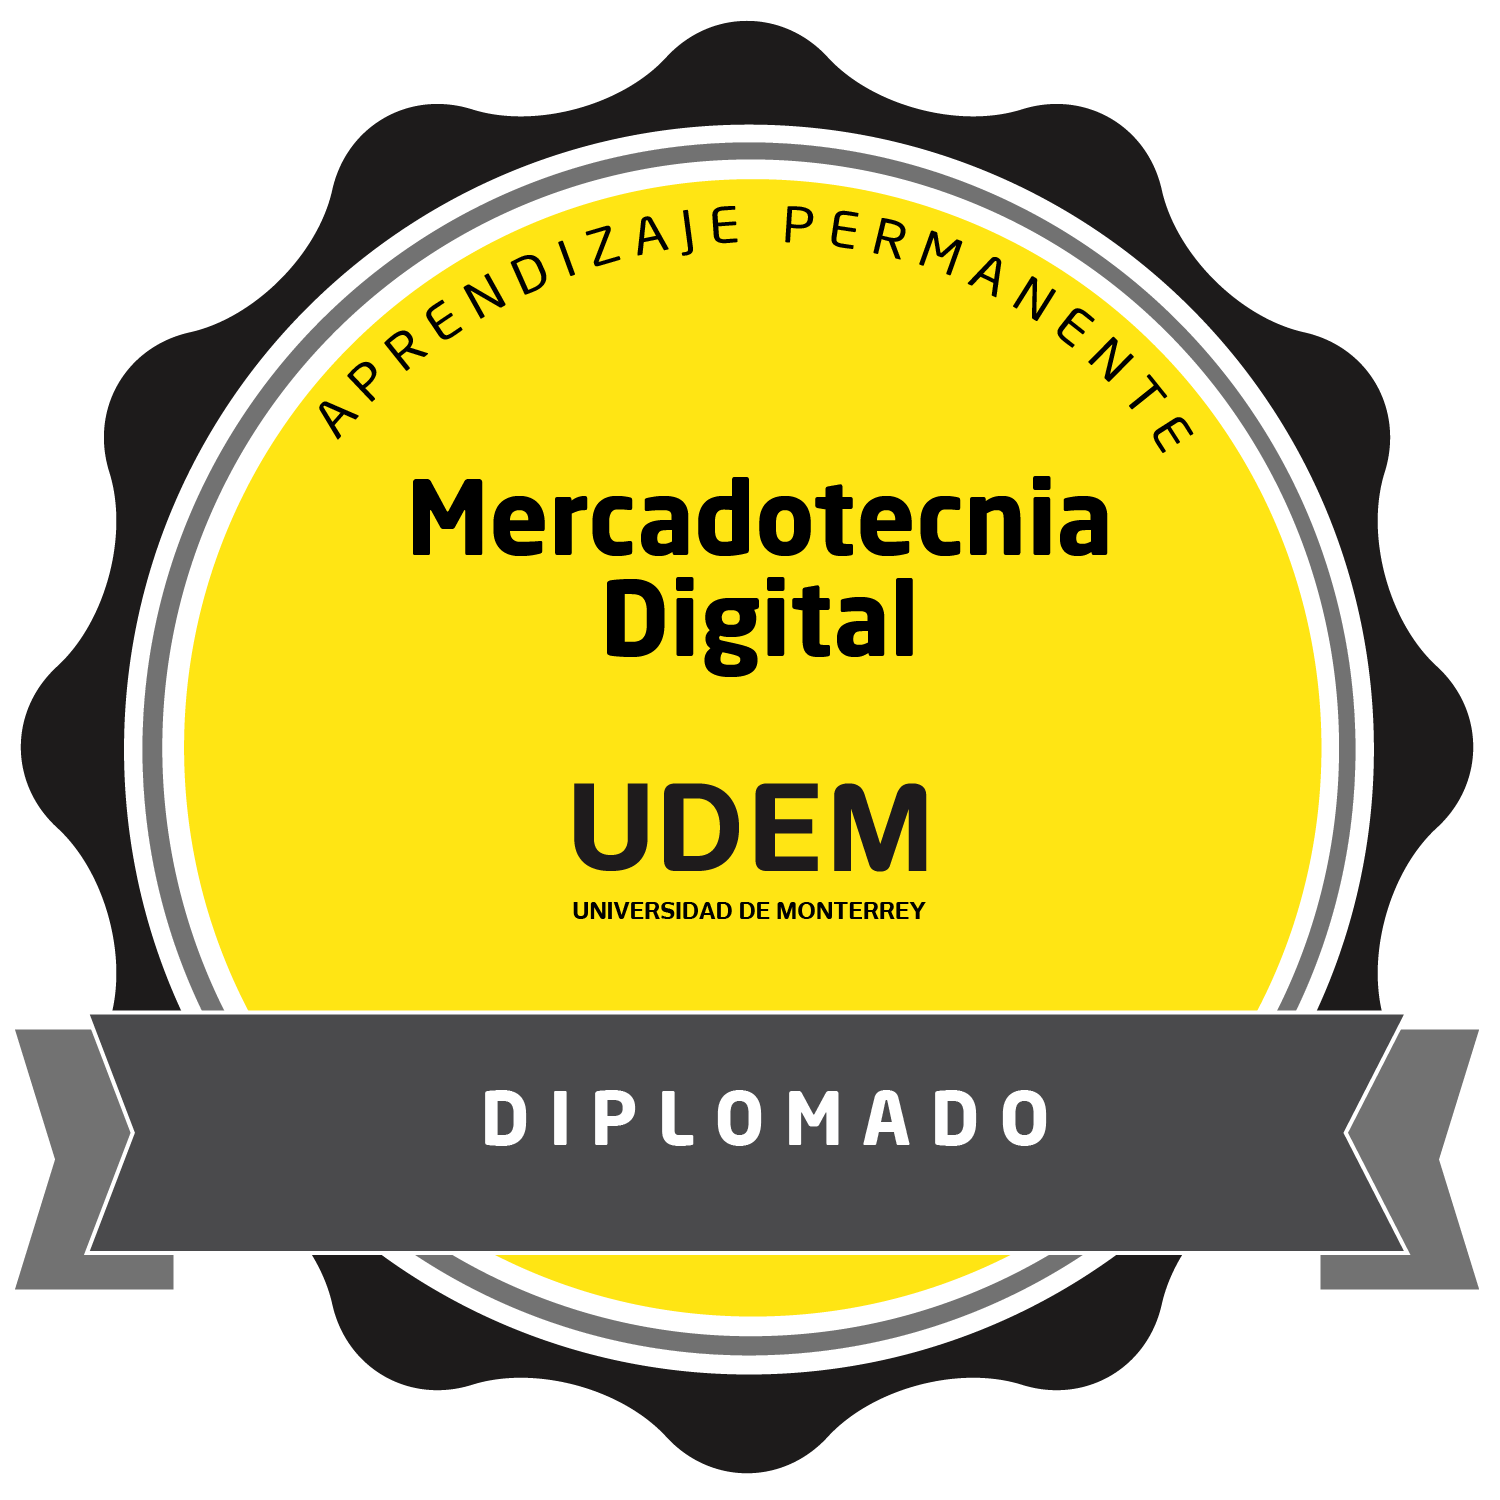 DIPLOMADO DE MERCADOTECNIA DIGITAL